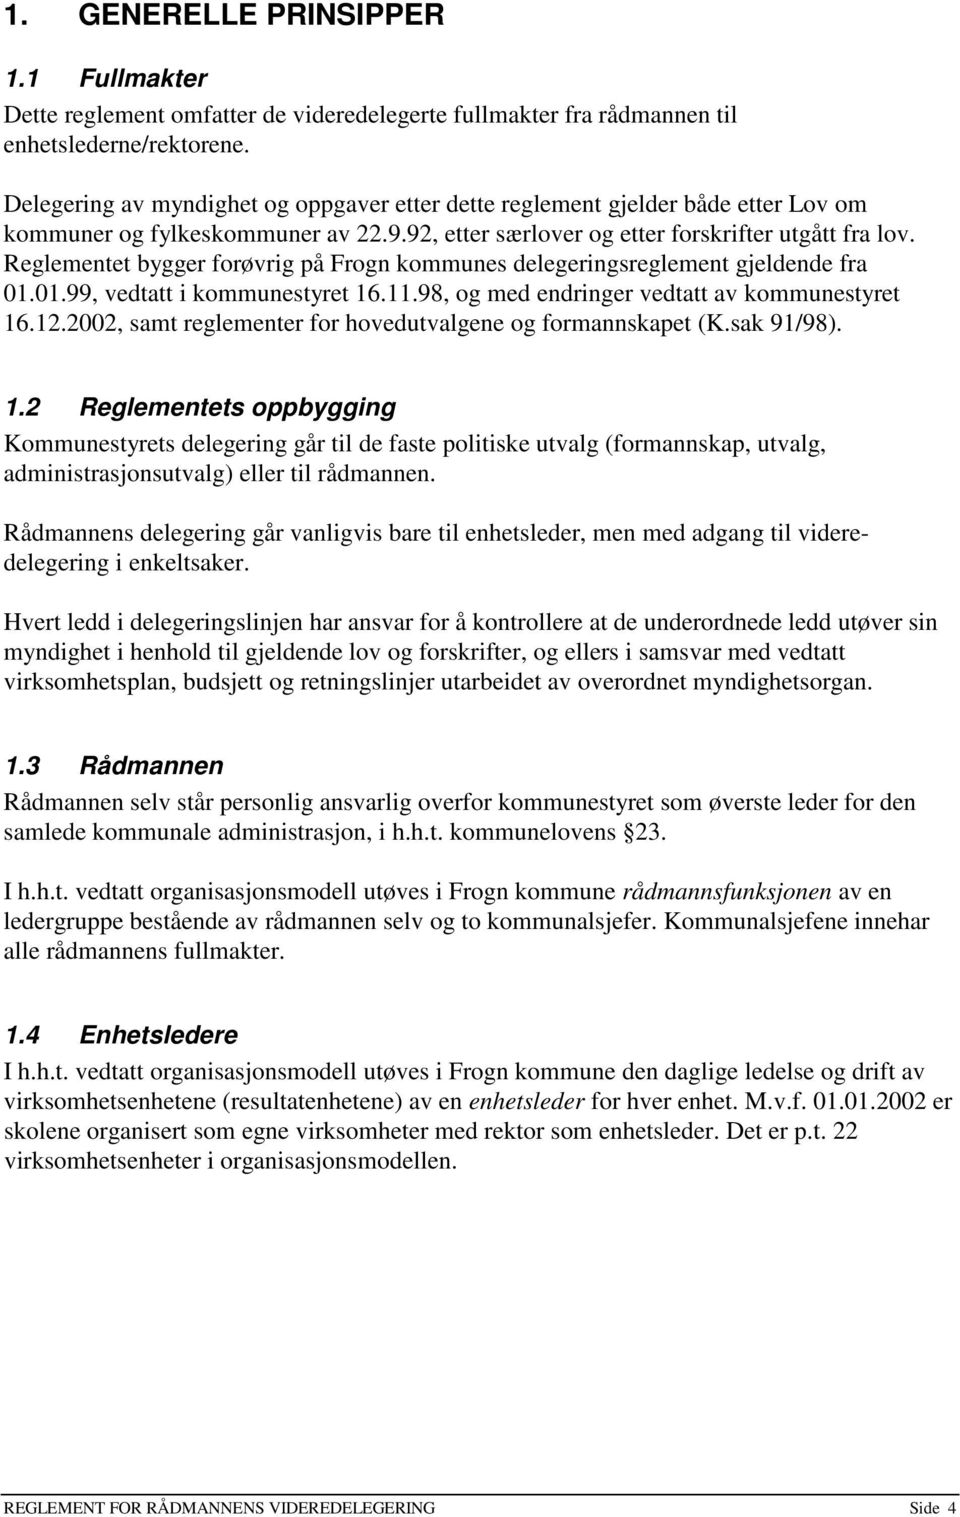 Reglementet bygger forøvrig på Frogn kommunes delegeringsreglement gjeldende fra 01.01.99, vedtatt i kommunestyret 16.11.98, og med endringer vedtatt av kommunestyret 16.12.